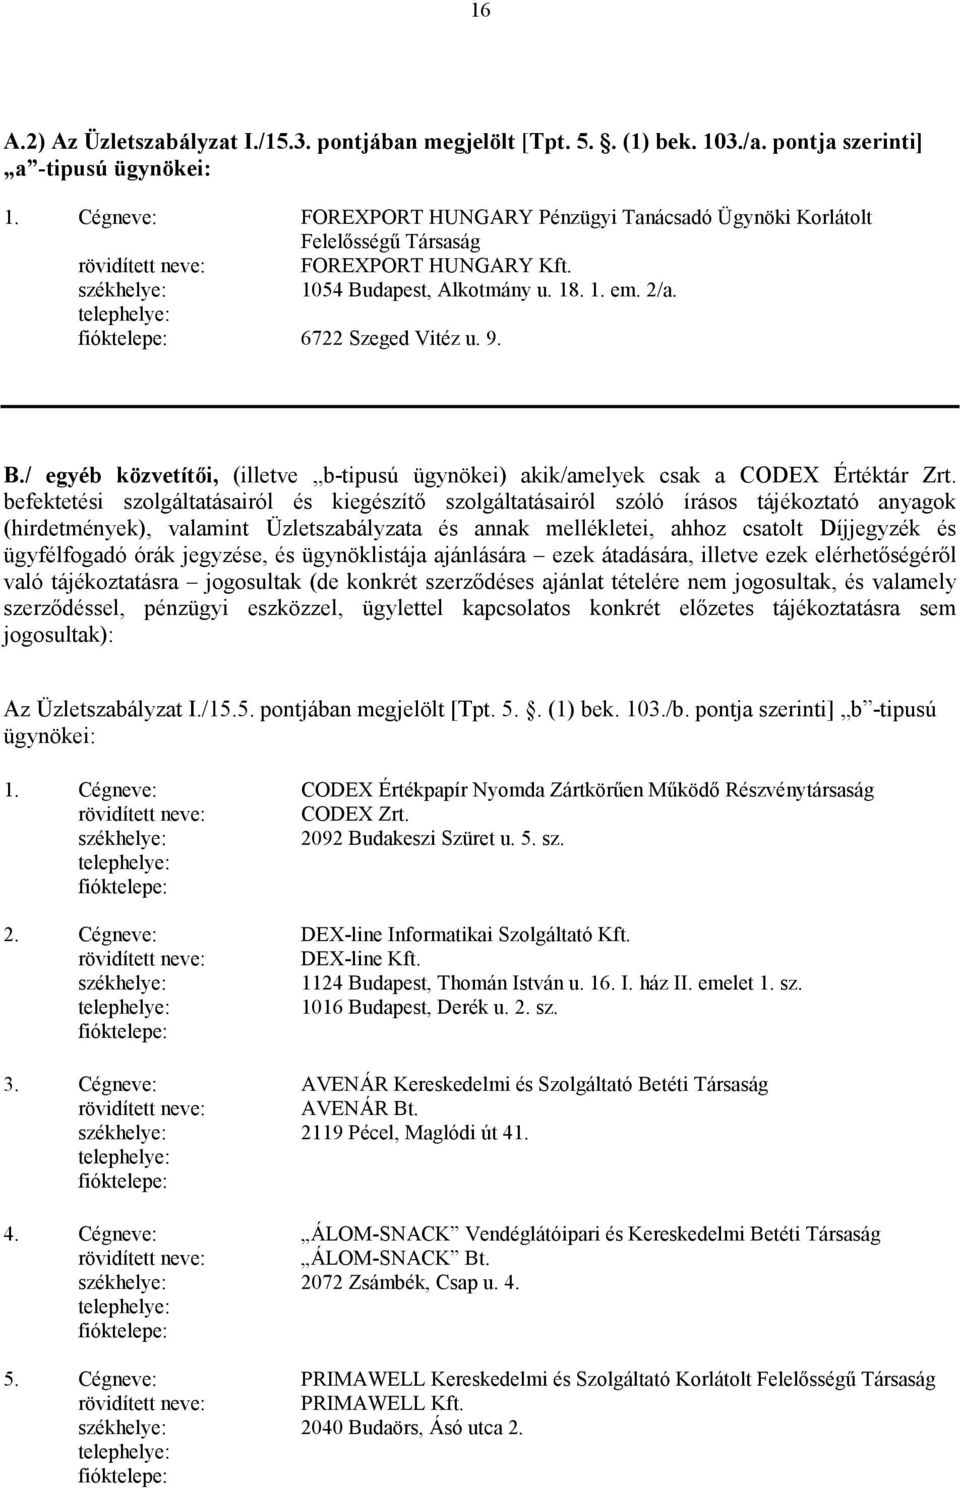 B./ egyéb közvetítıi, (illetve b-tipusú ügynökei) akik/amelyek csak a CODEX Értéktár Zrt.